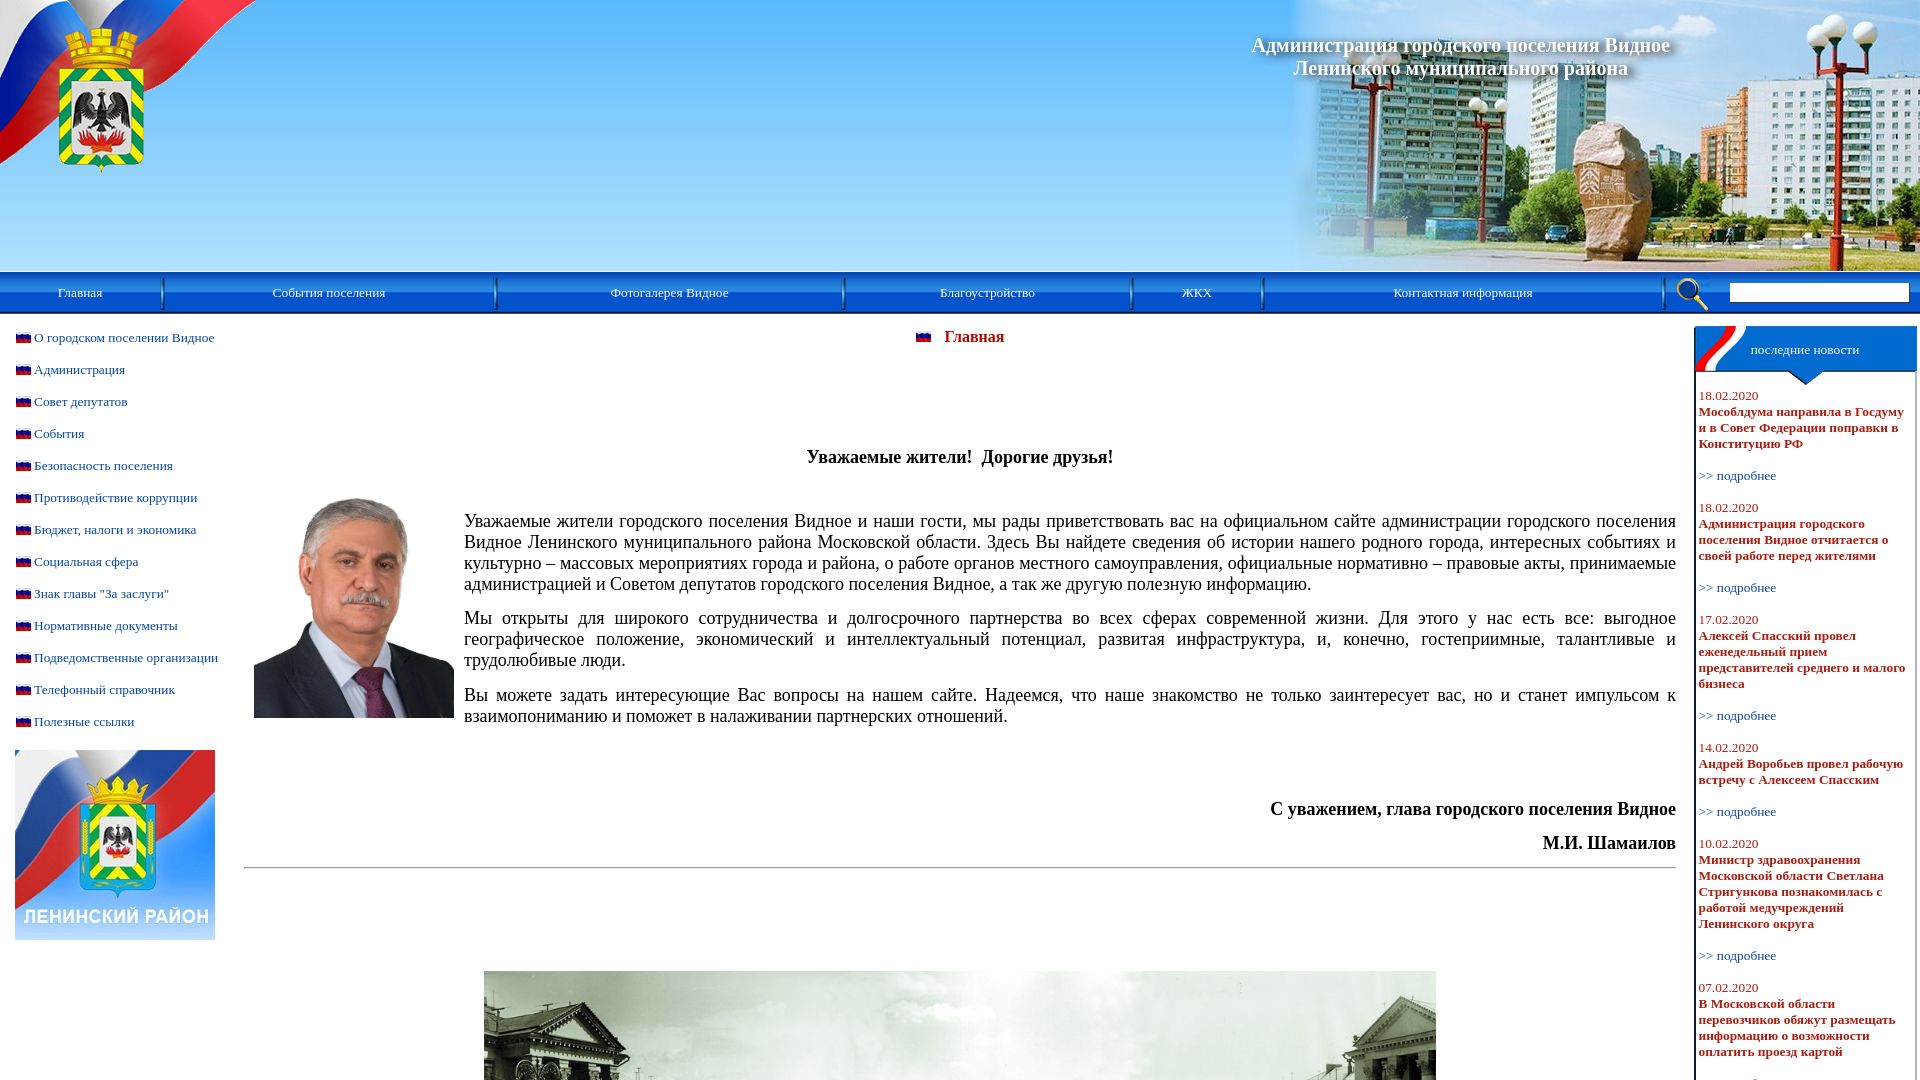 Status do site albonumismatico.ru está   ONLINE